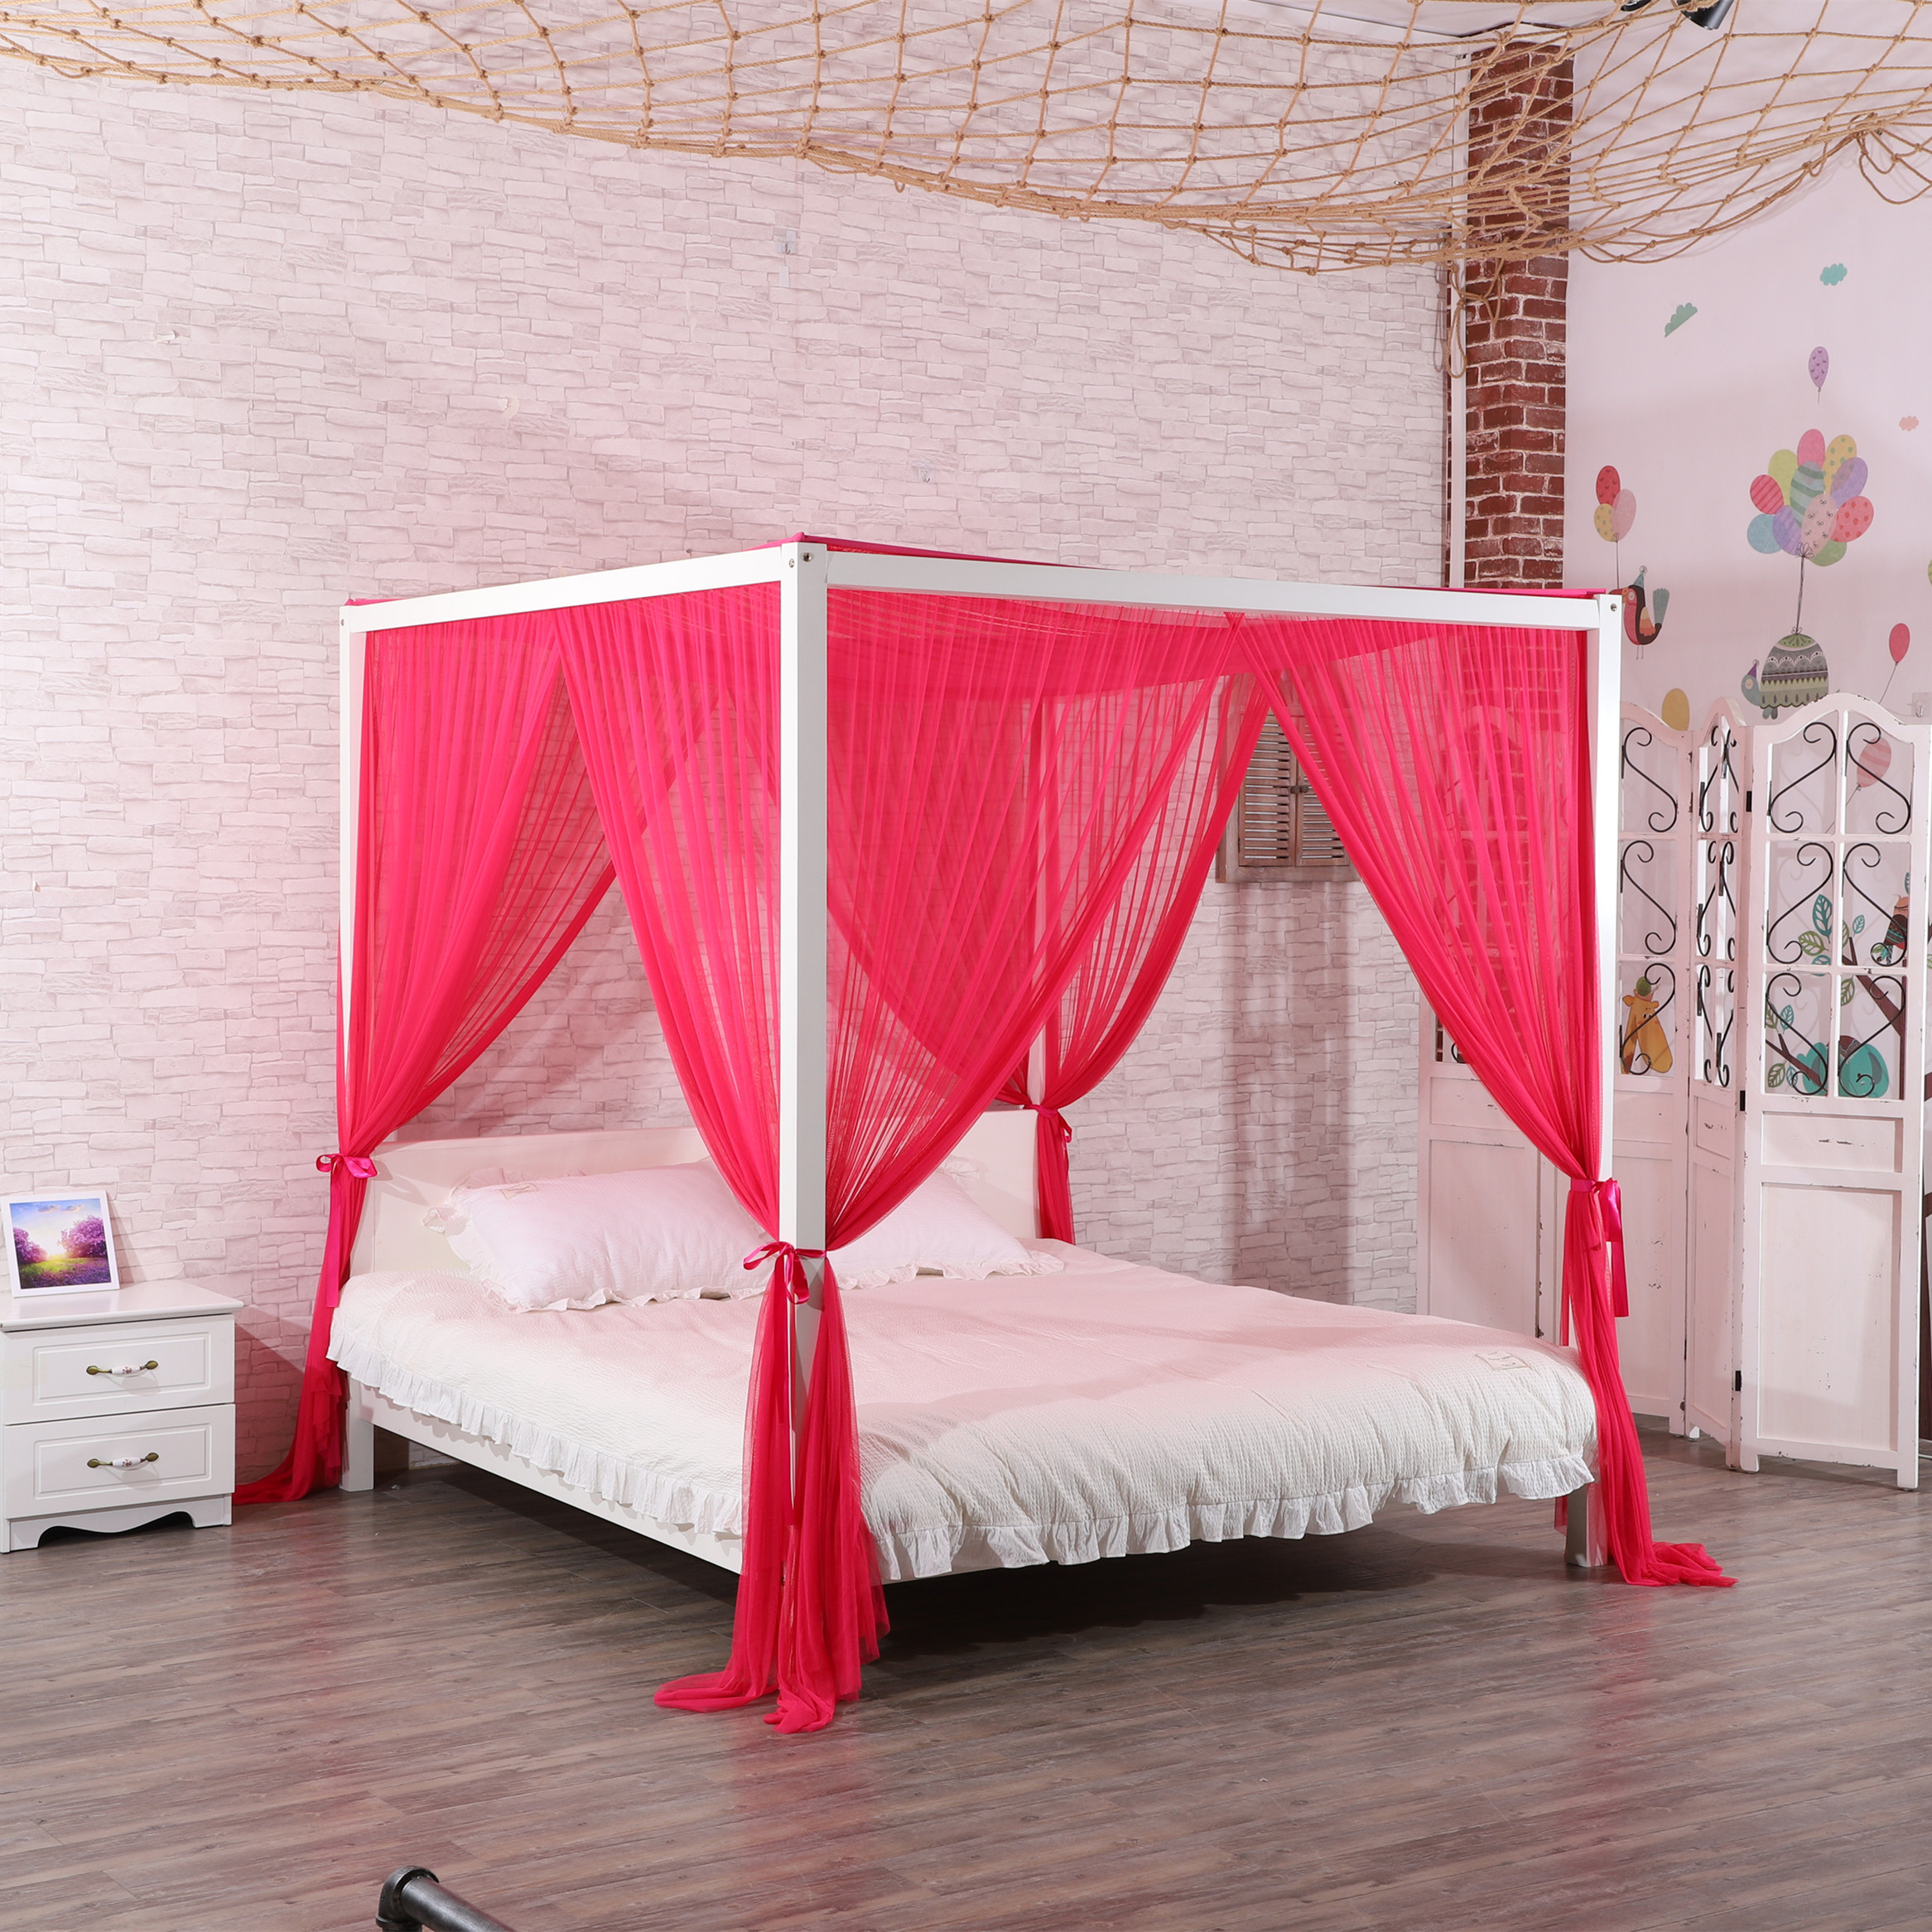 2020 nuevo estilo 100% poliéster de alta calidad forma Rectangular decoración del hogar cama doble red tamaño King mosquitera para cama